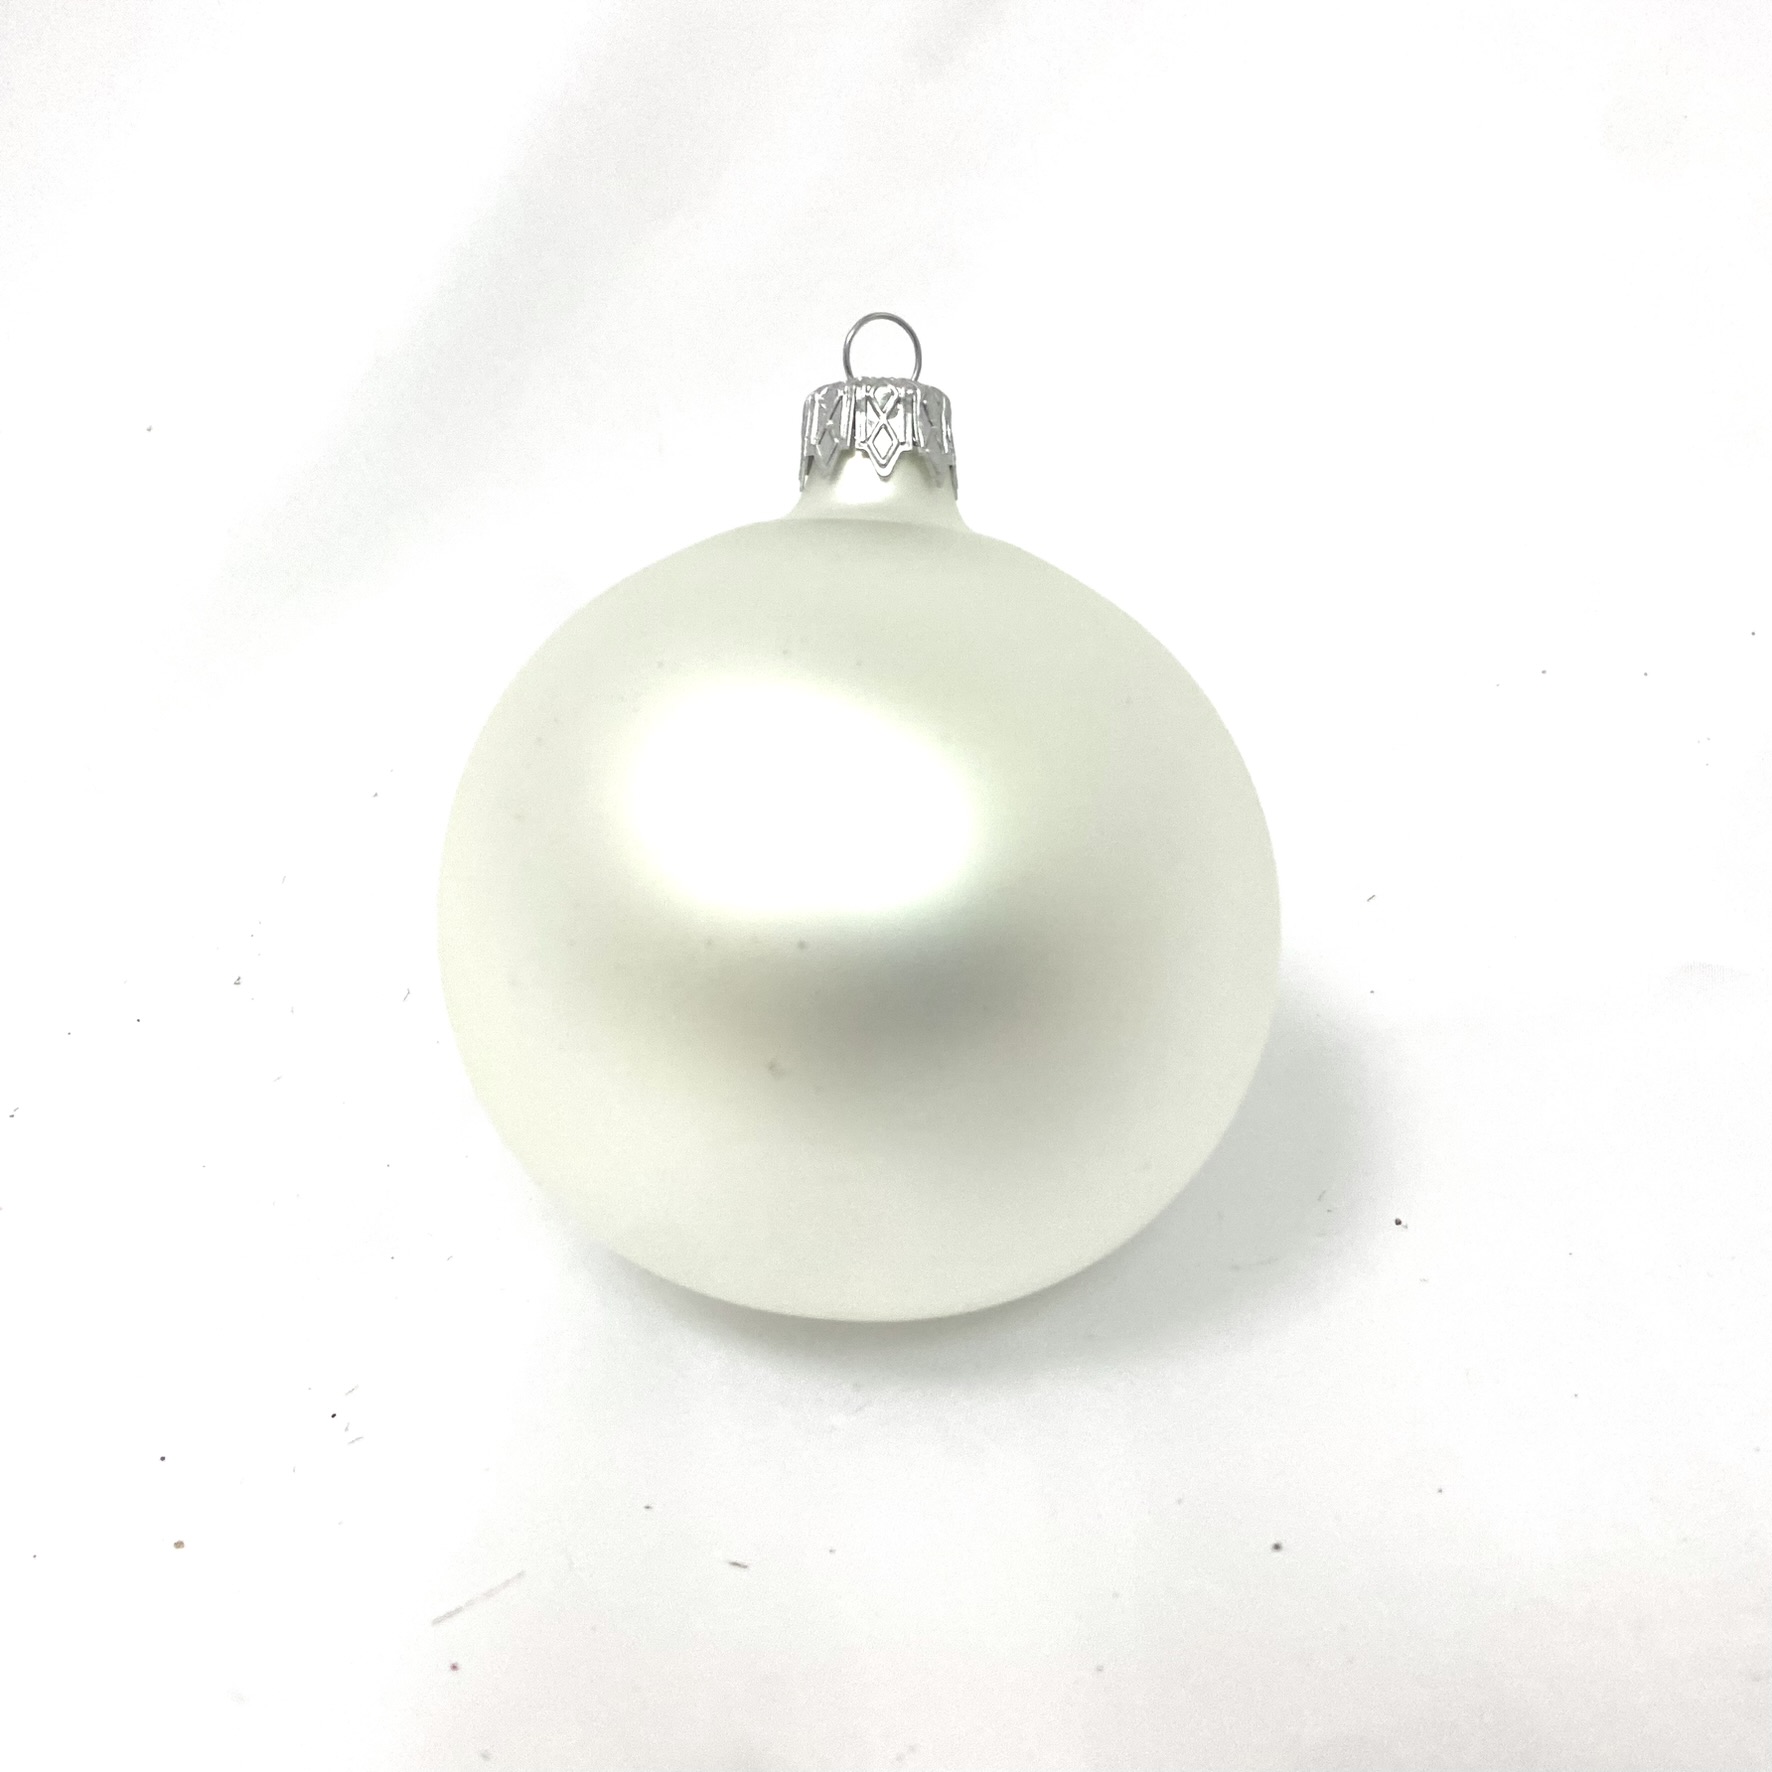 Skleněná vánoční ozdoba bílá s textem na přání - bez dekoru (1 ks, 8 cm) Balení: 1ks, Barva: bílá, Velikost: 8 cm